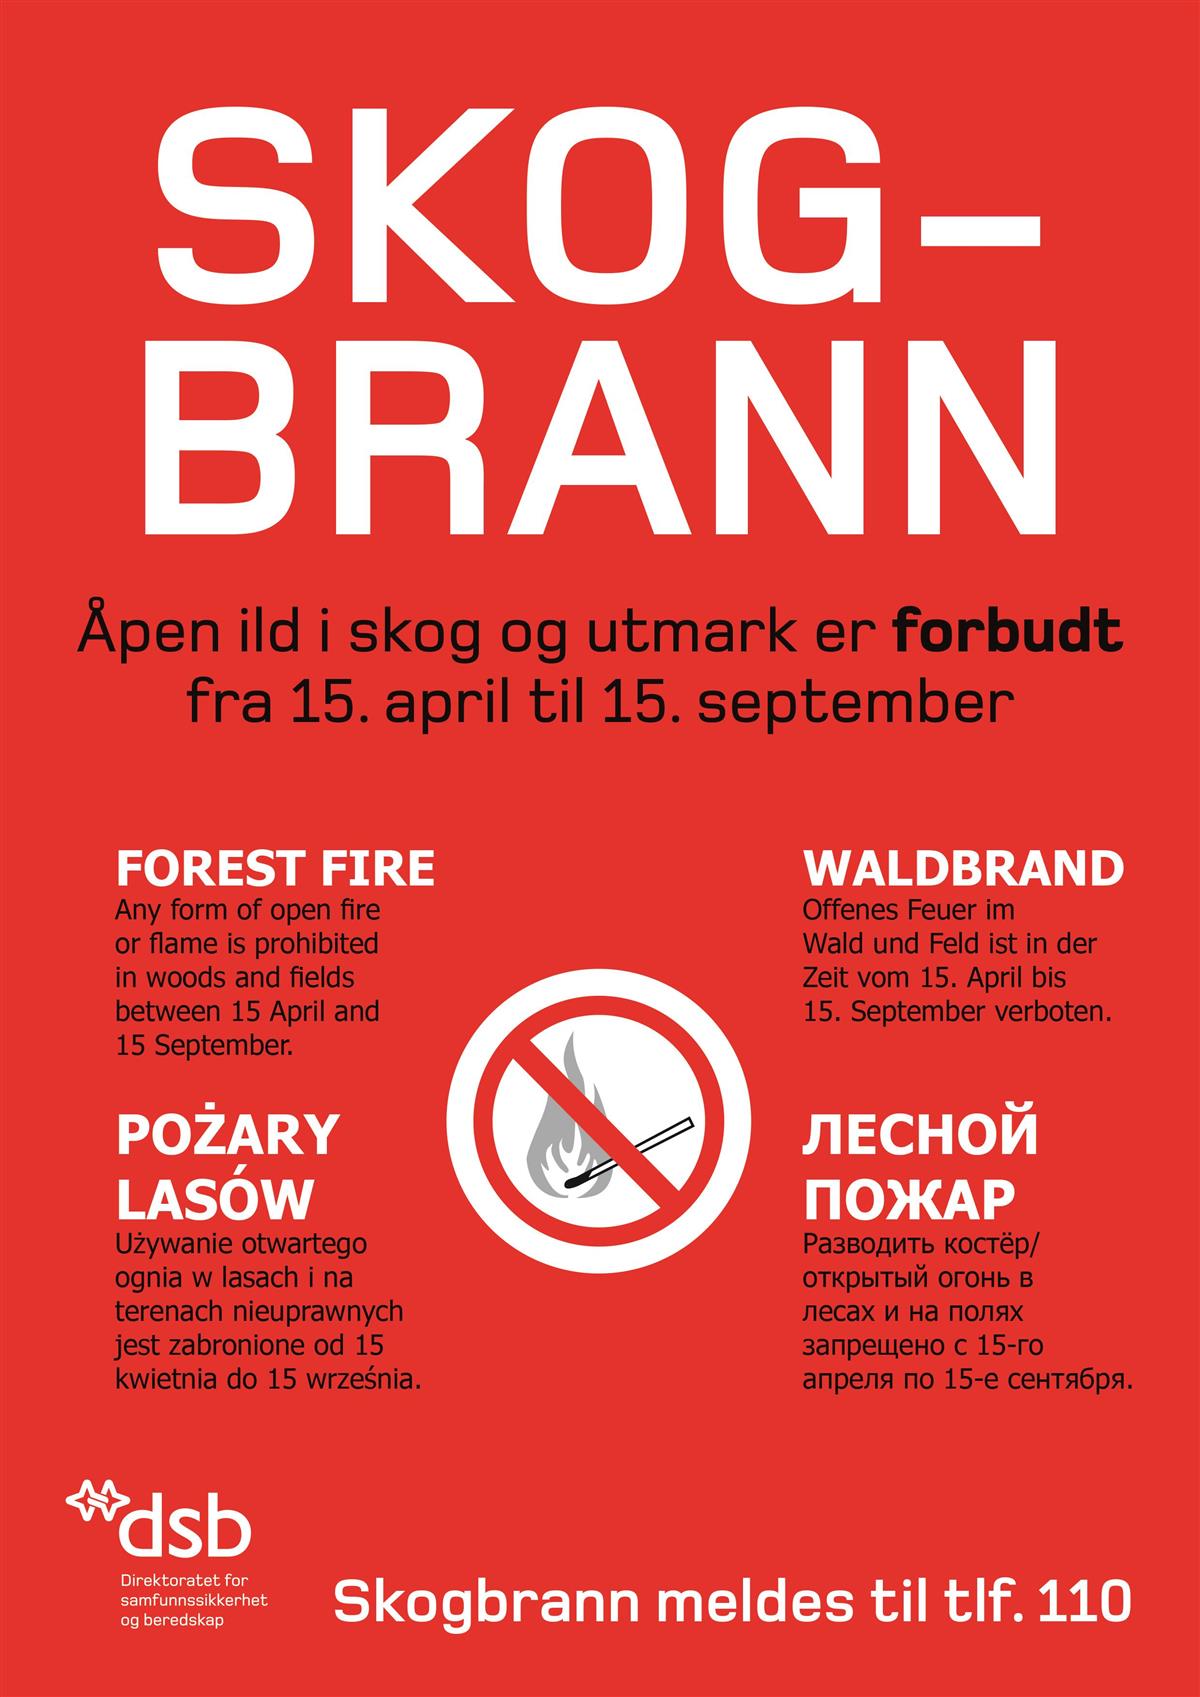 Plakat med teksten Åpen ild i skog og utmark er forbudt fra 15.april til 15.september. Dette står på flere forskjellige språk. - Klikk for stort bilde